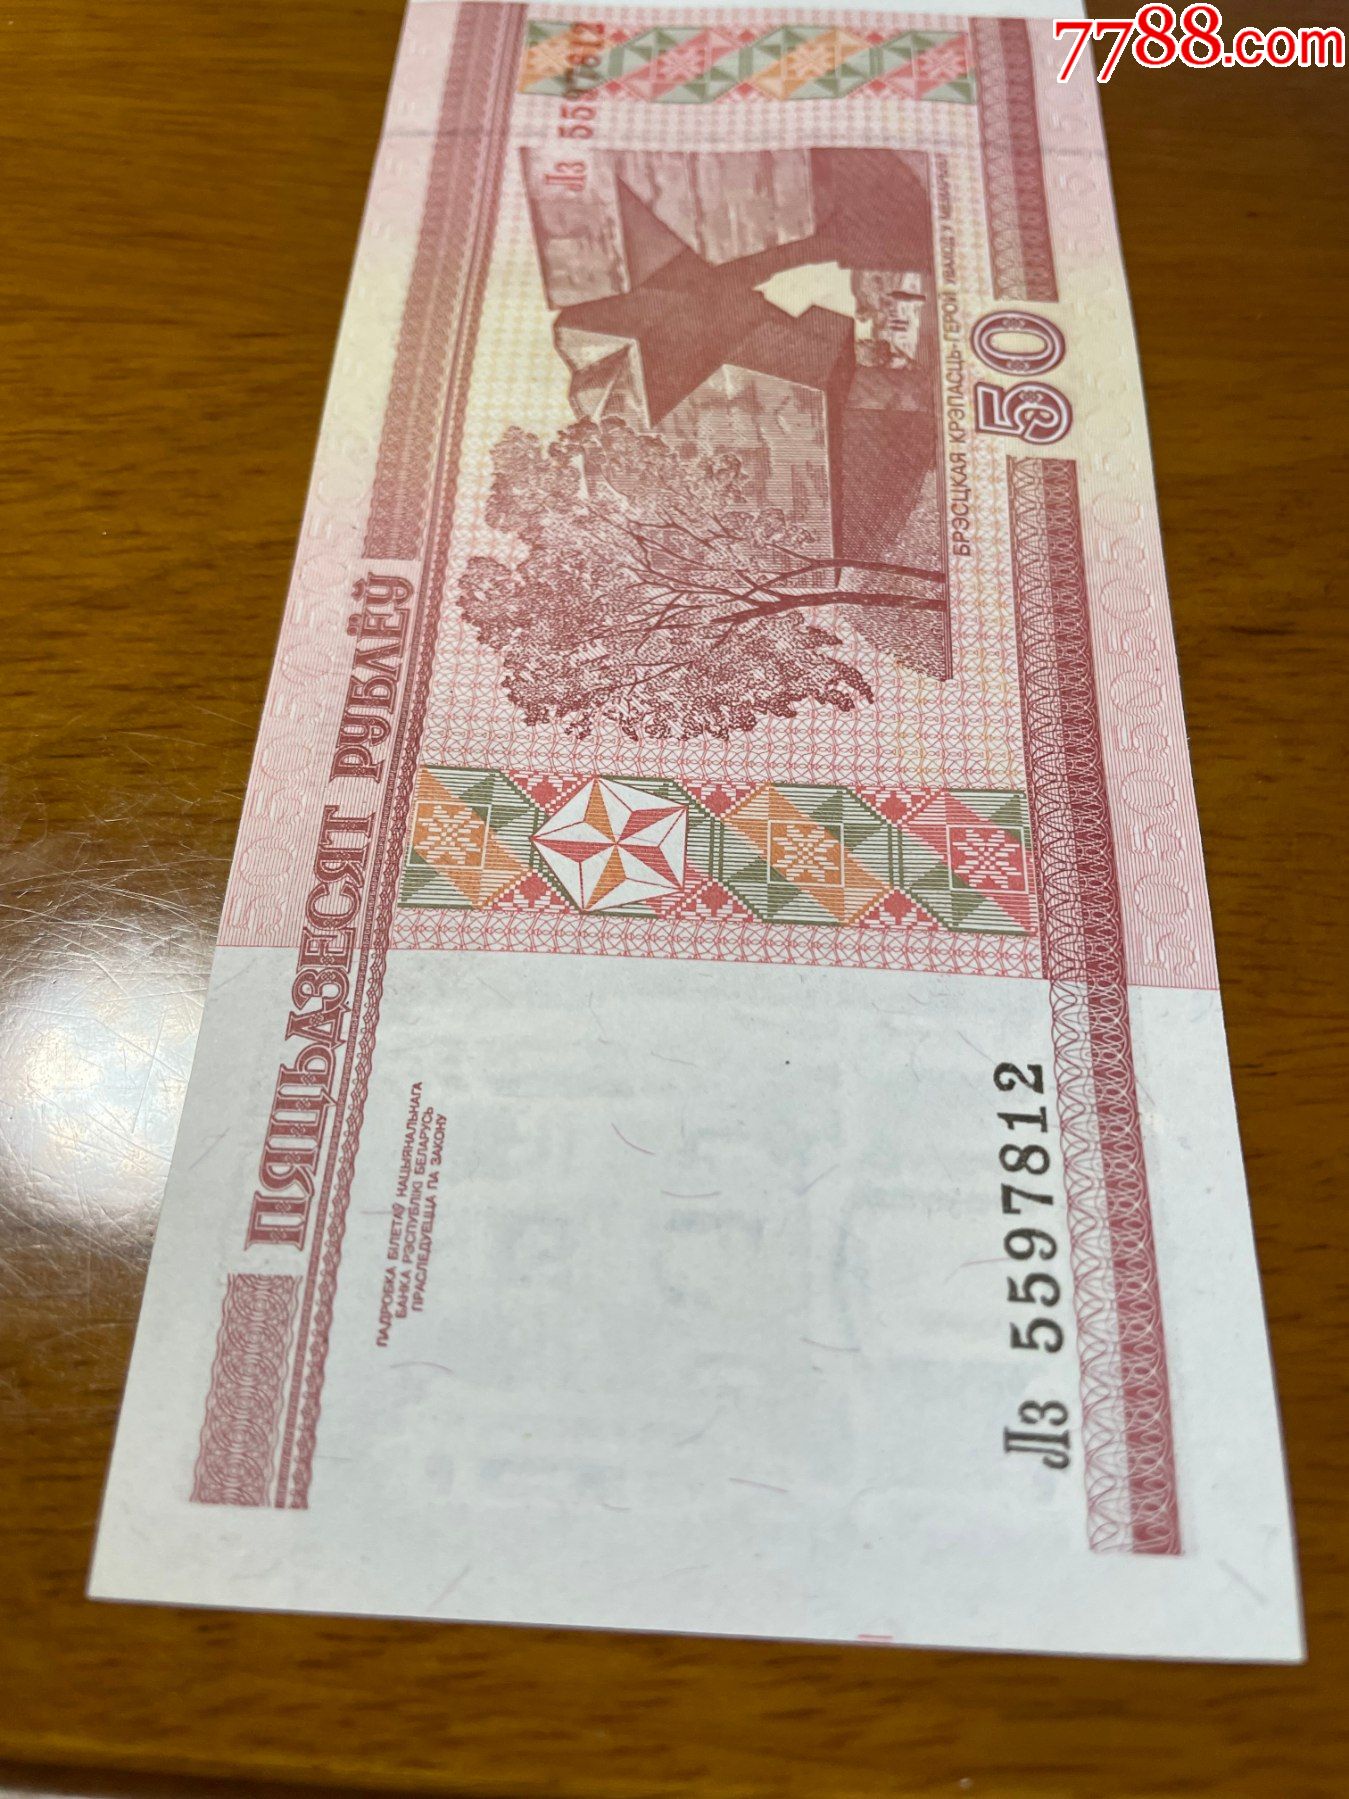 委内瑞拉50元纸币